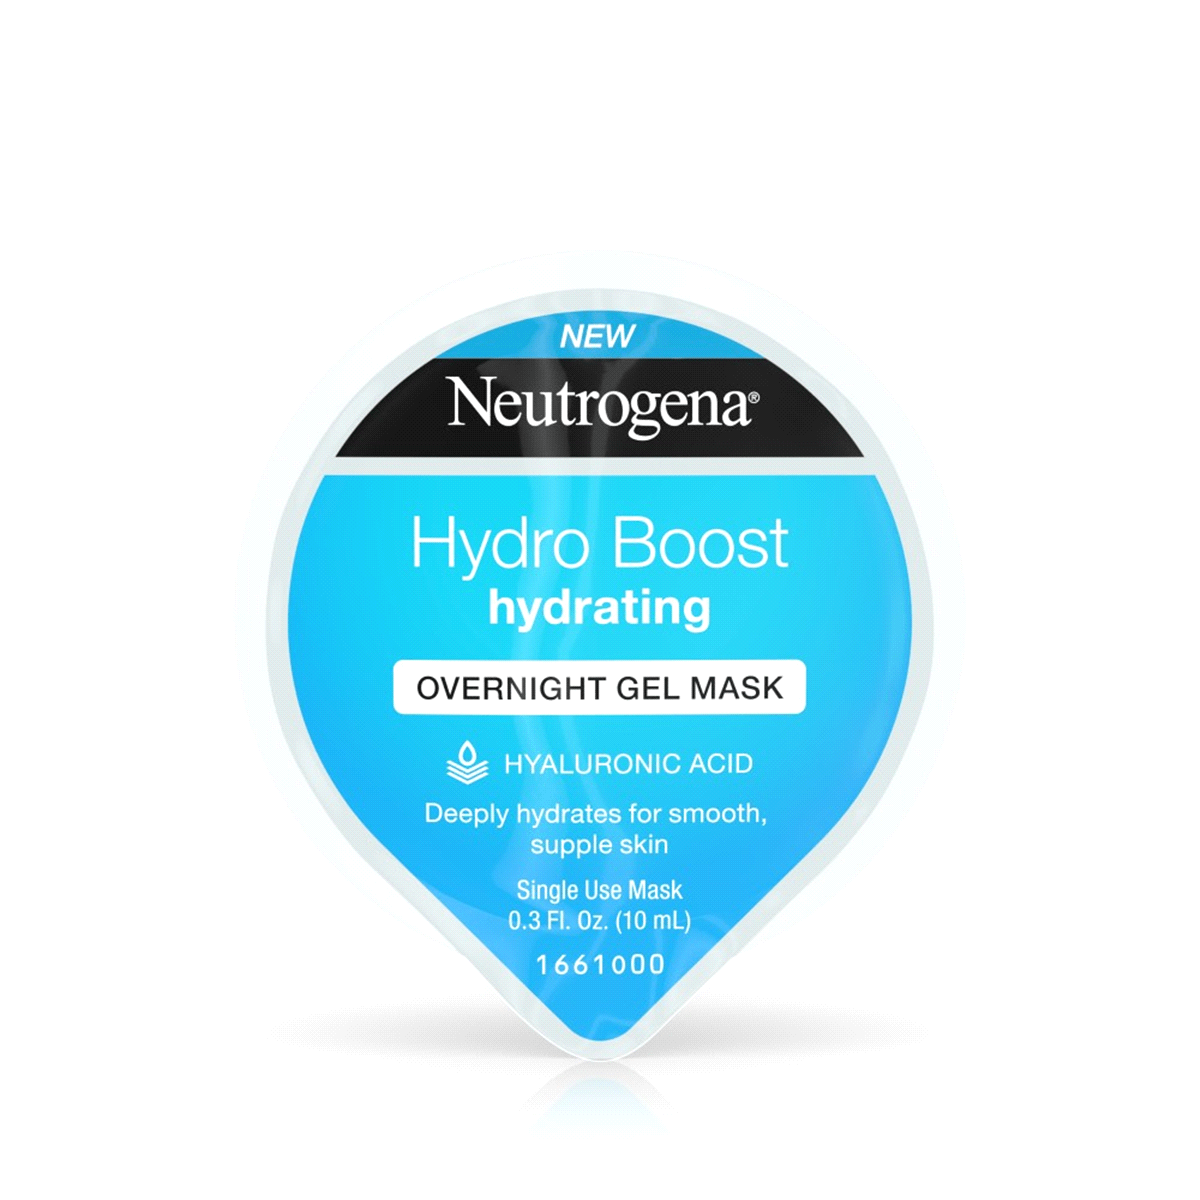 Neutrogena Logo - Neutrogena Hydro Boost Hydrating Overnight Gel Mask, 0.3 Oz